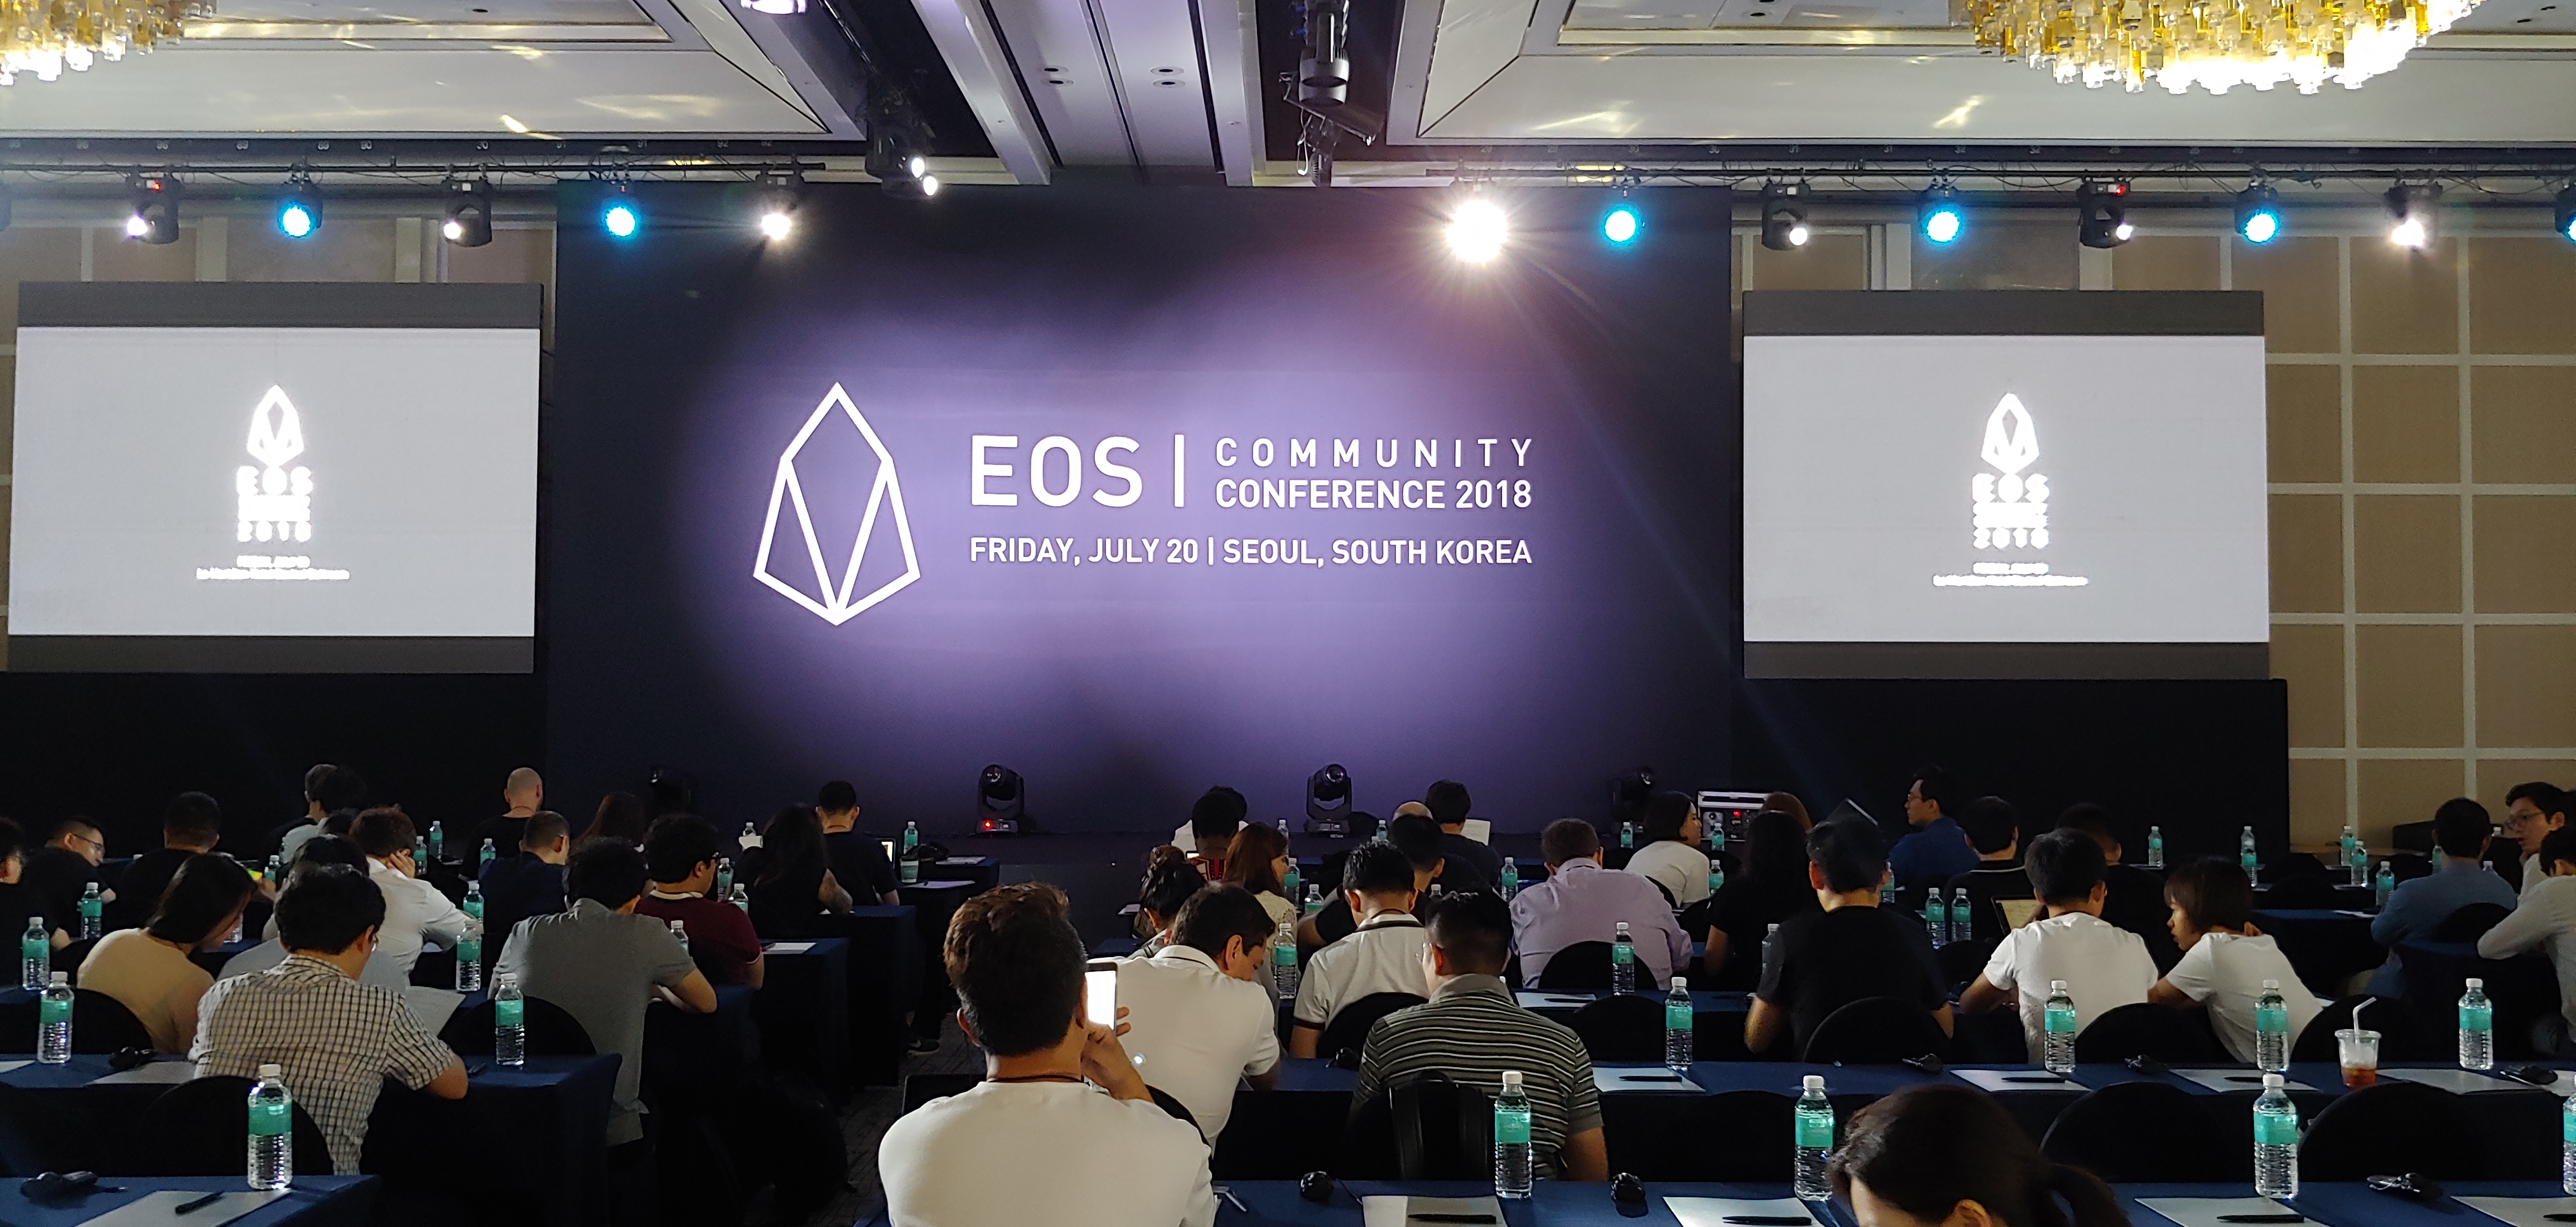 [이오스 이야기] EOS Community Conference 2018 @Seoul에 왔습니다